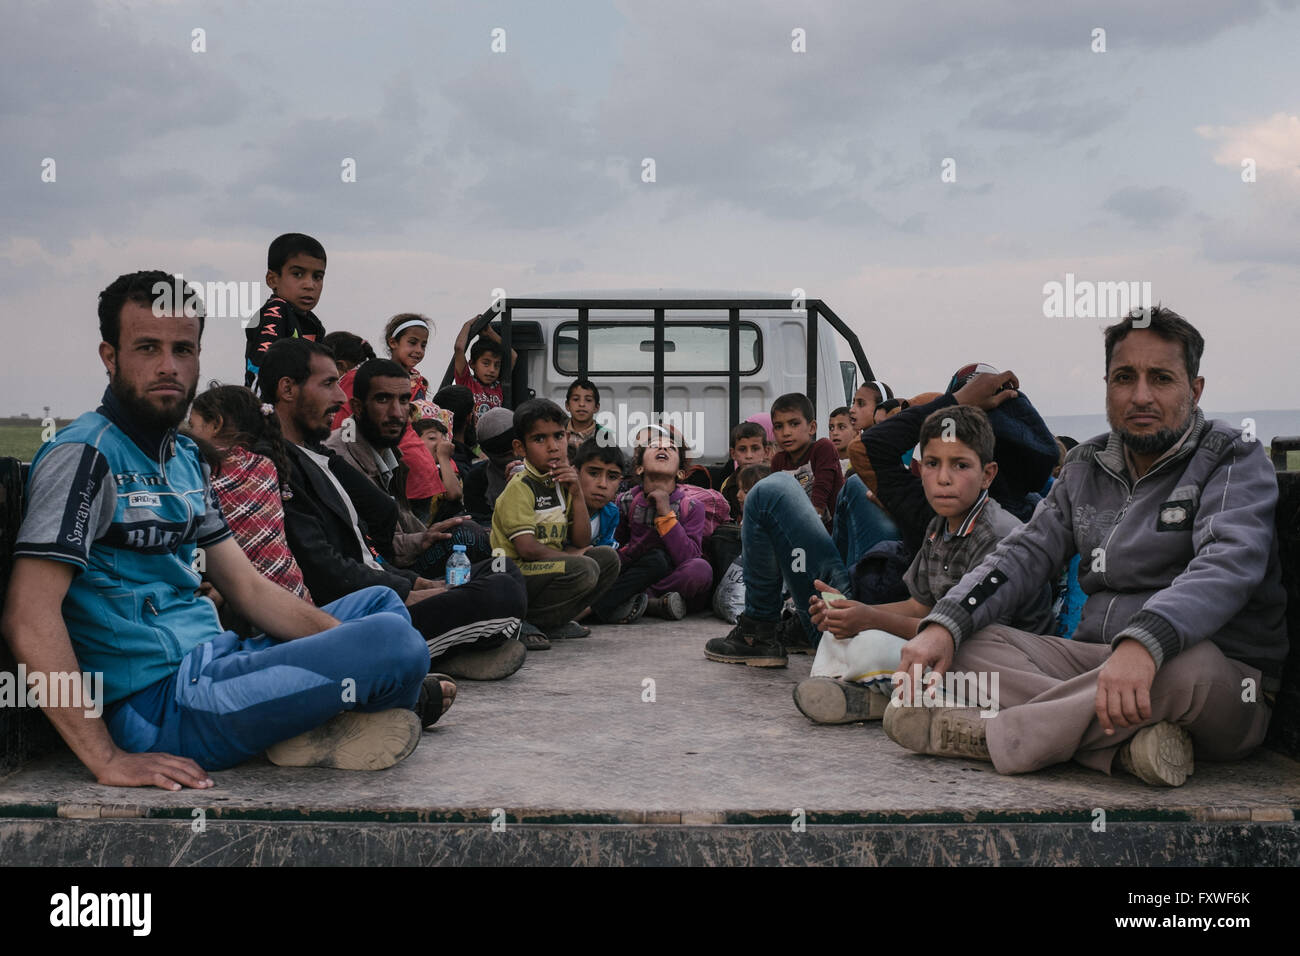 Aide refugiees pechmergas qui fuient Mossoul - 07/04/2016 - Irak / Mossoul - personnes attendent en Van qui les mènera à un les réfugiés Banque D'Images